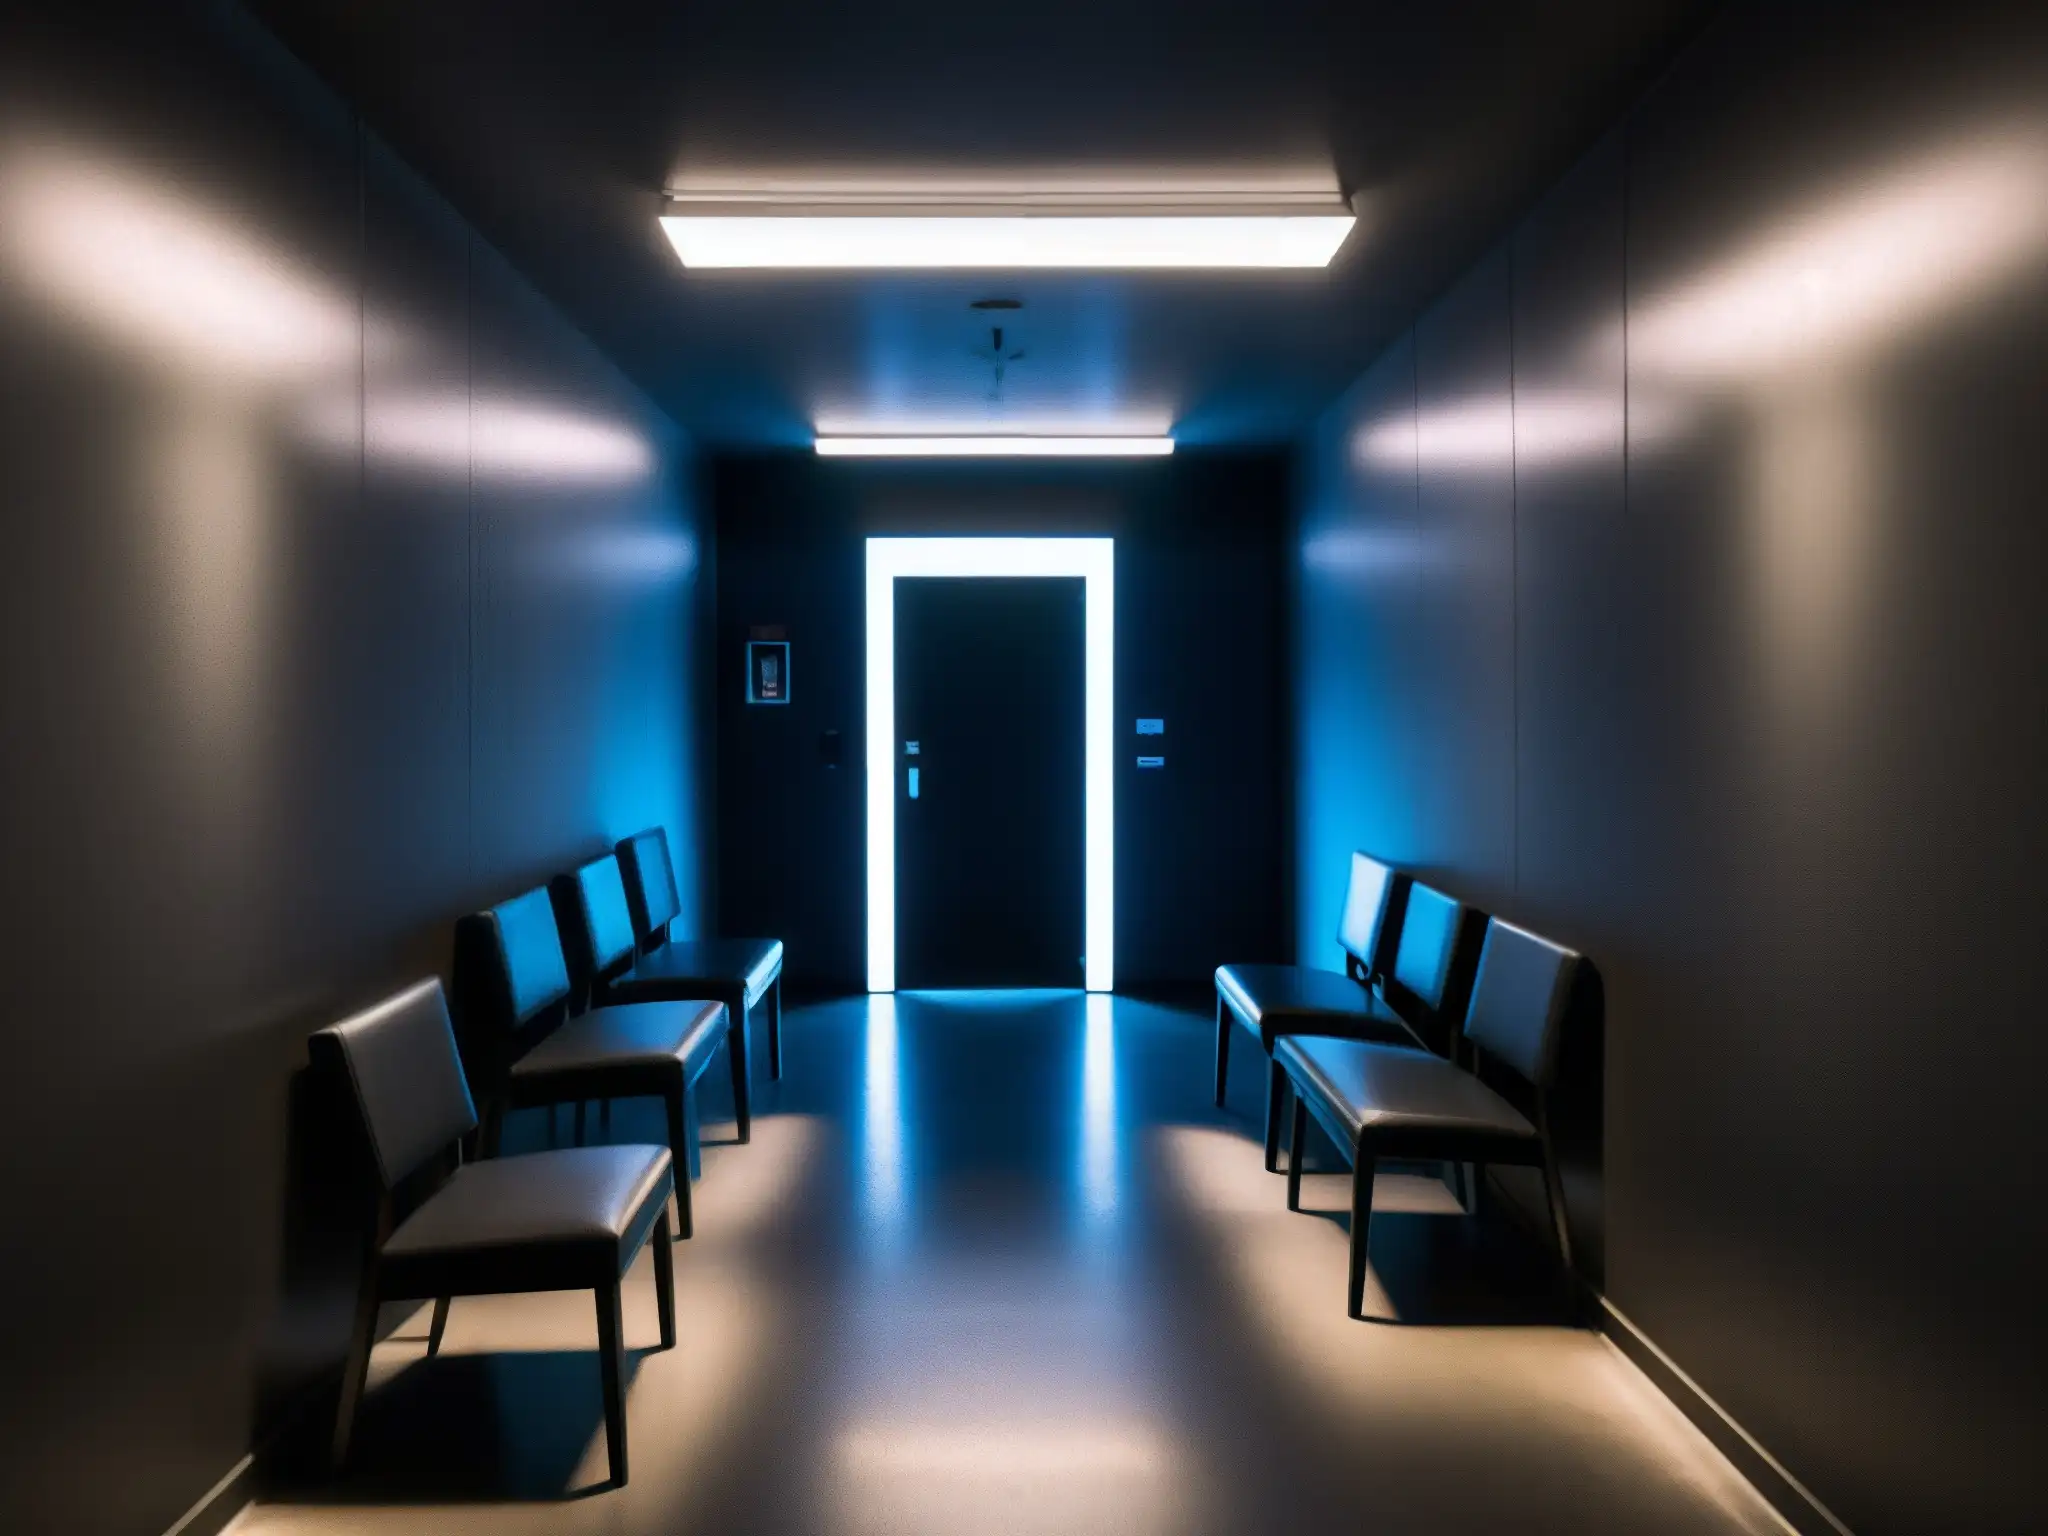 Corredor sombrío con luces fluorescentes parpadeantes, revelando salas de interrogatorio con espejos unidireccionales y equipo de grabación antiguo